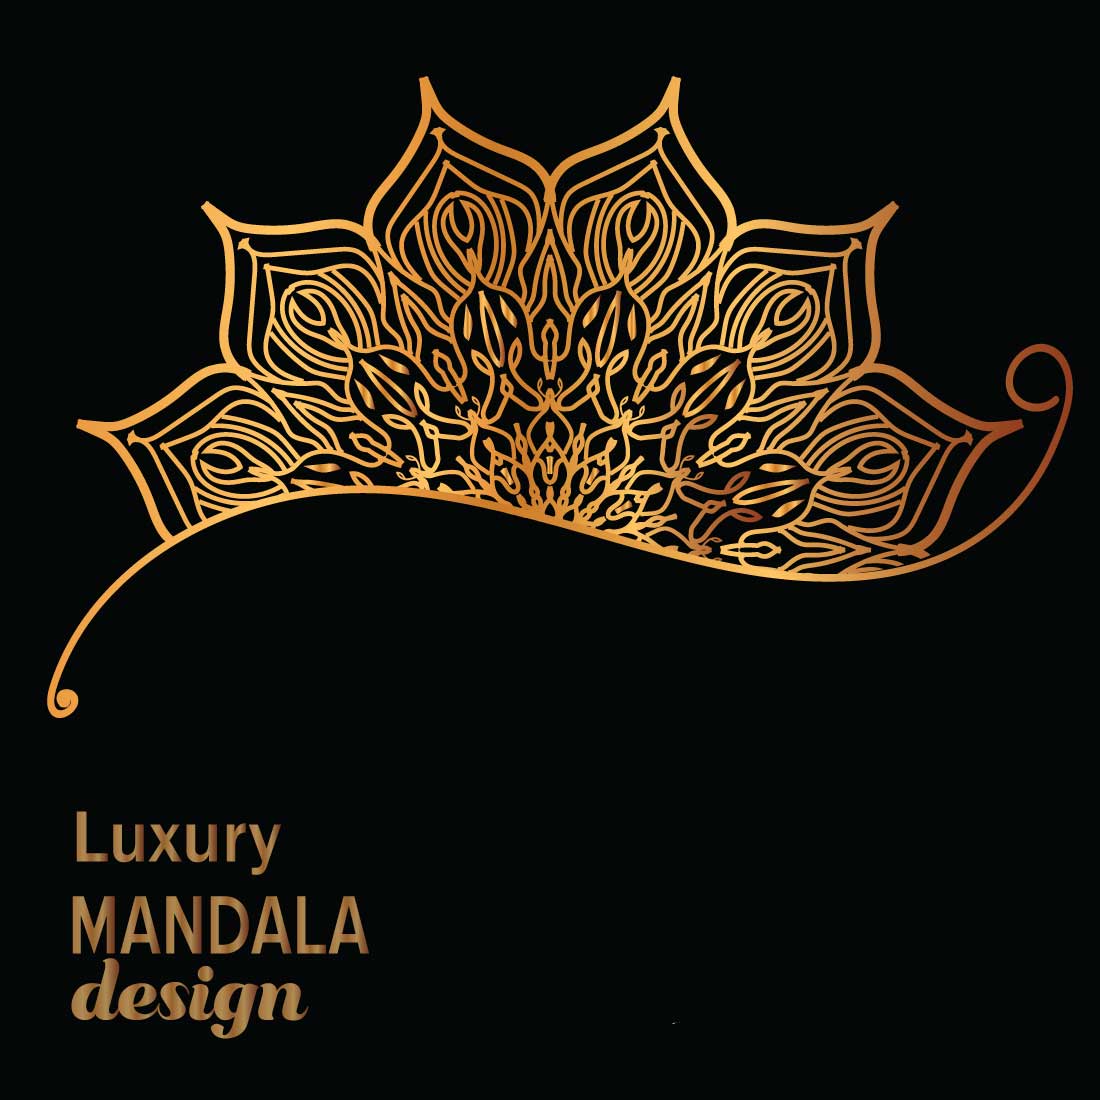 luxury mandala design cover image.